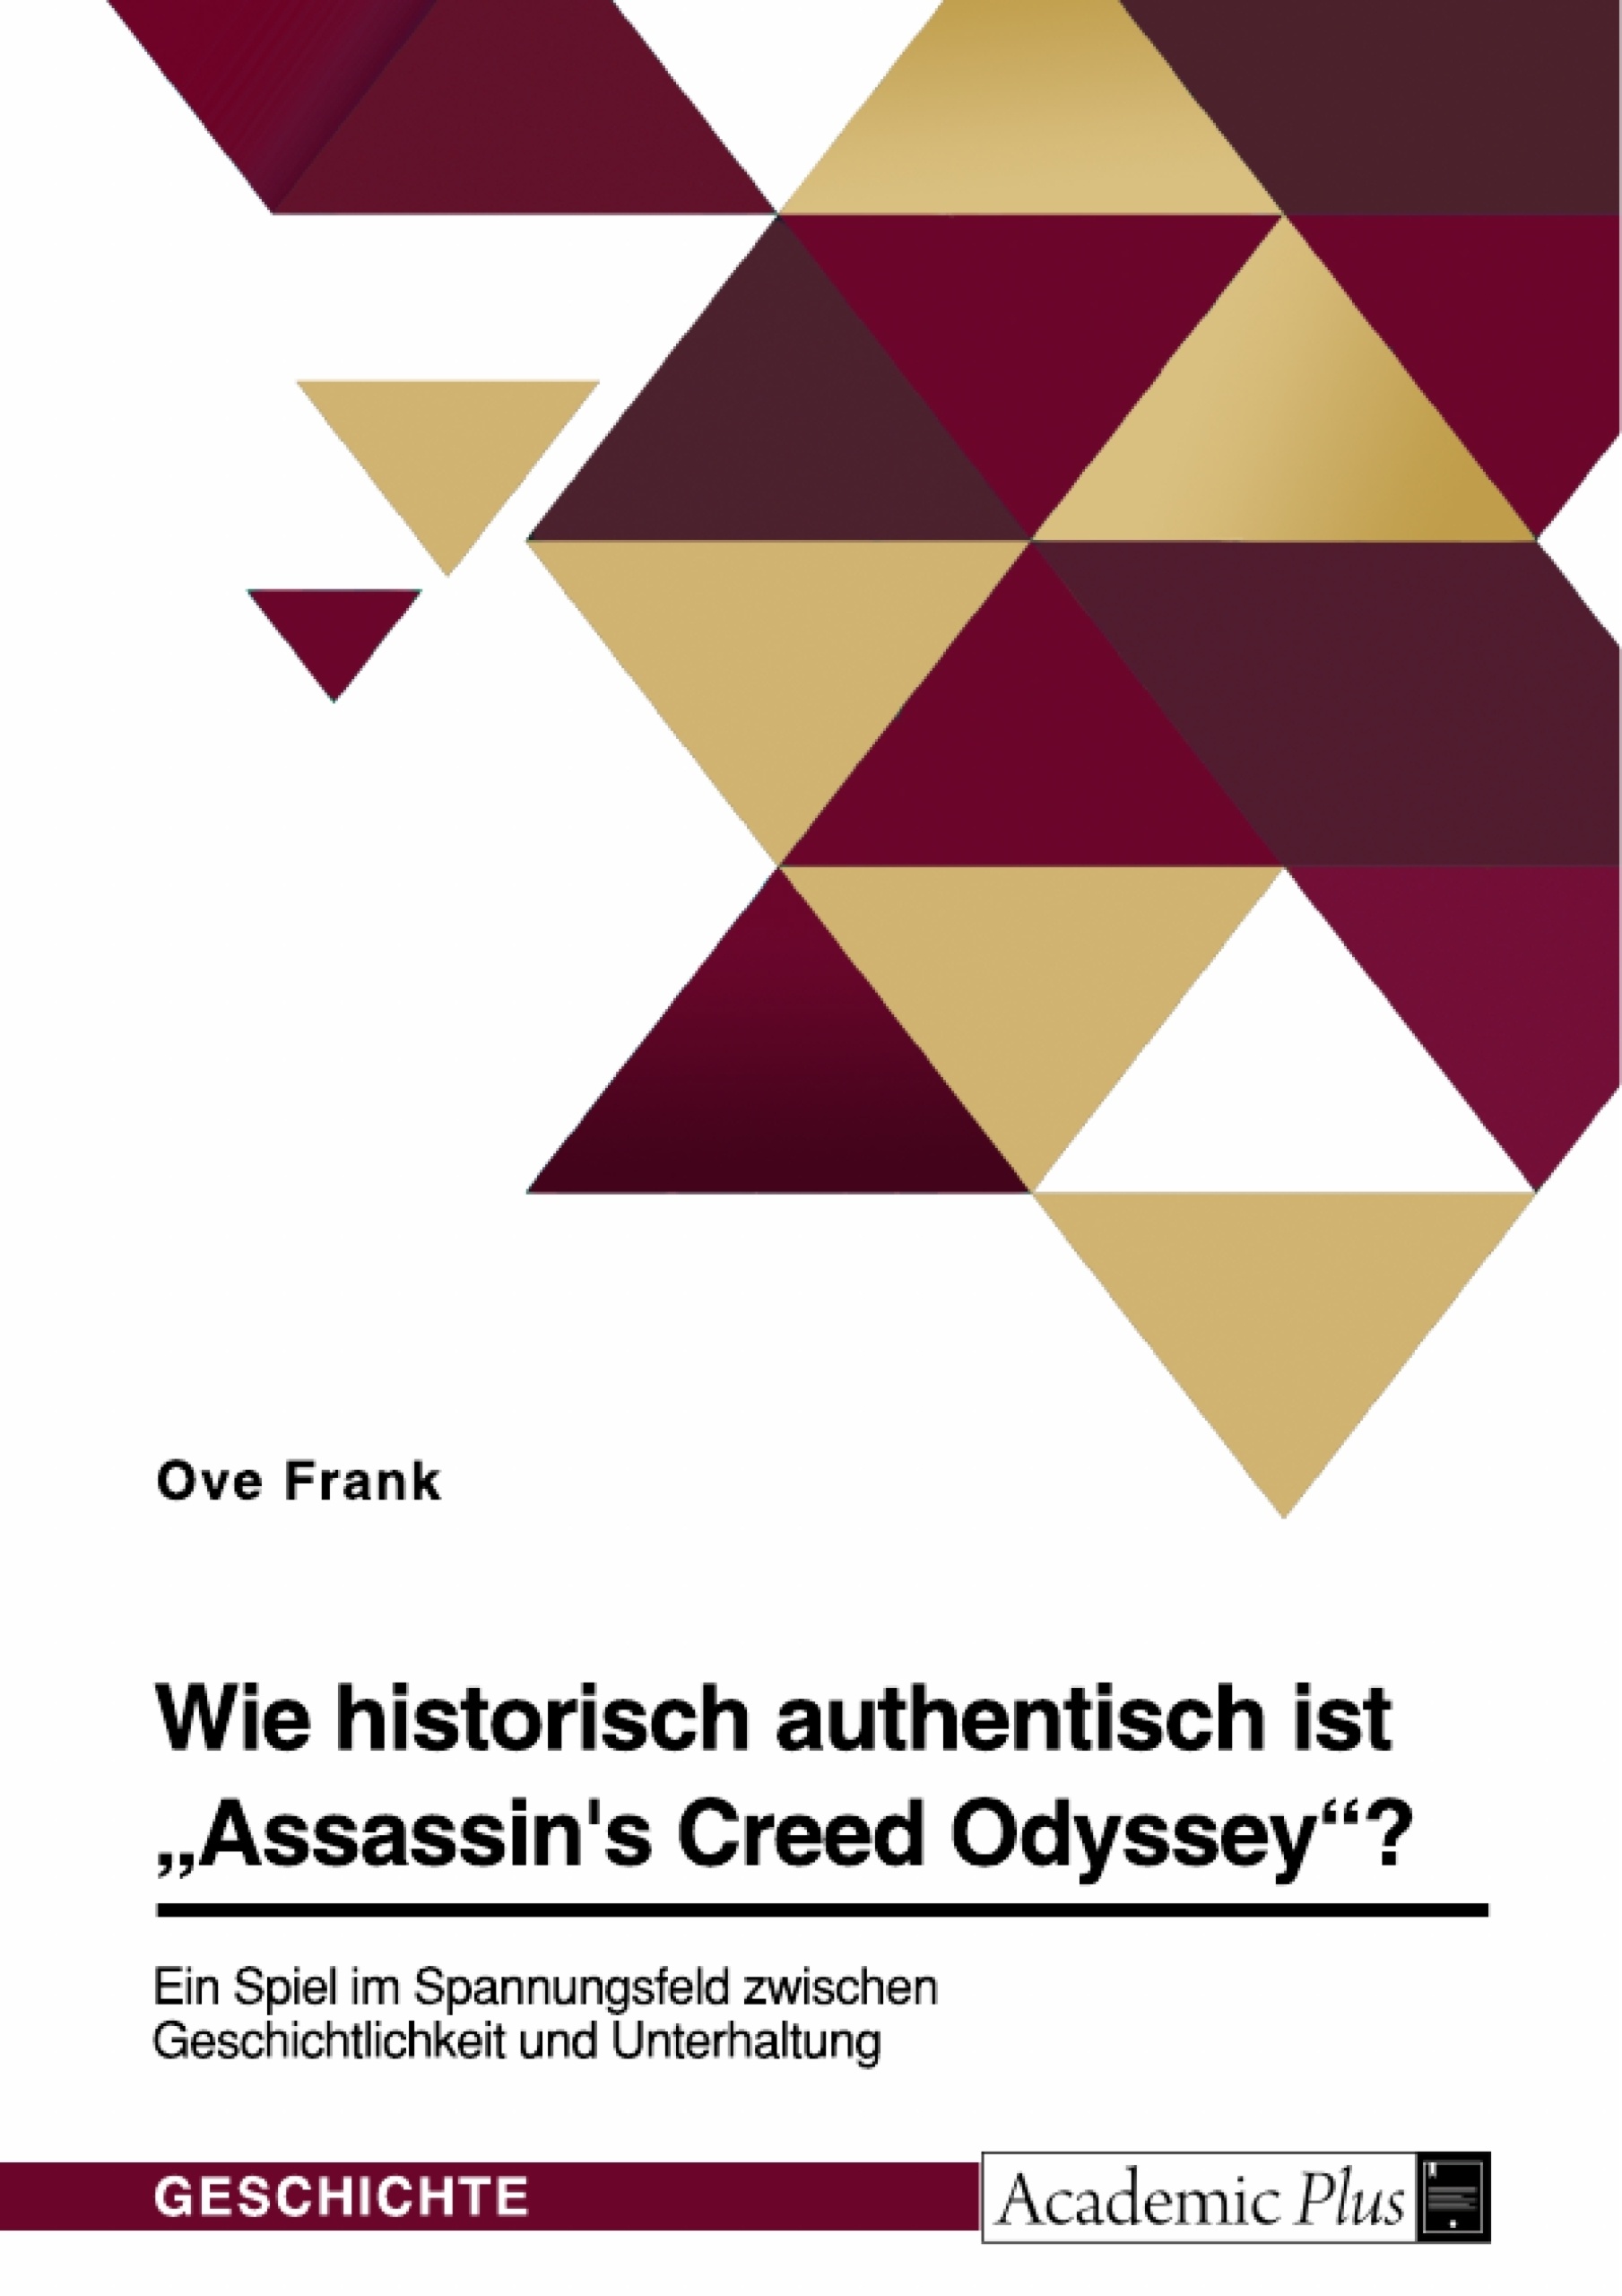 Title: Wie historisch authentisch ist "Assassin's Creed Odyssey"? Ein Spiel im Spannungsfeld zwischen Geschichtlichkeit und Unterhaltung